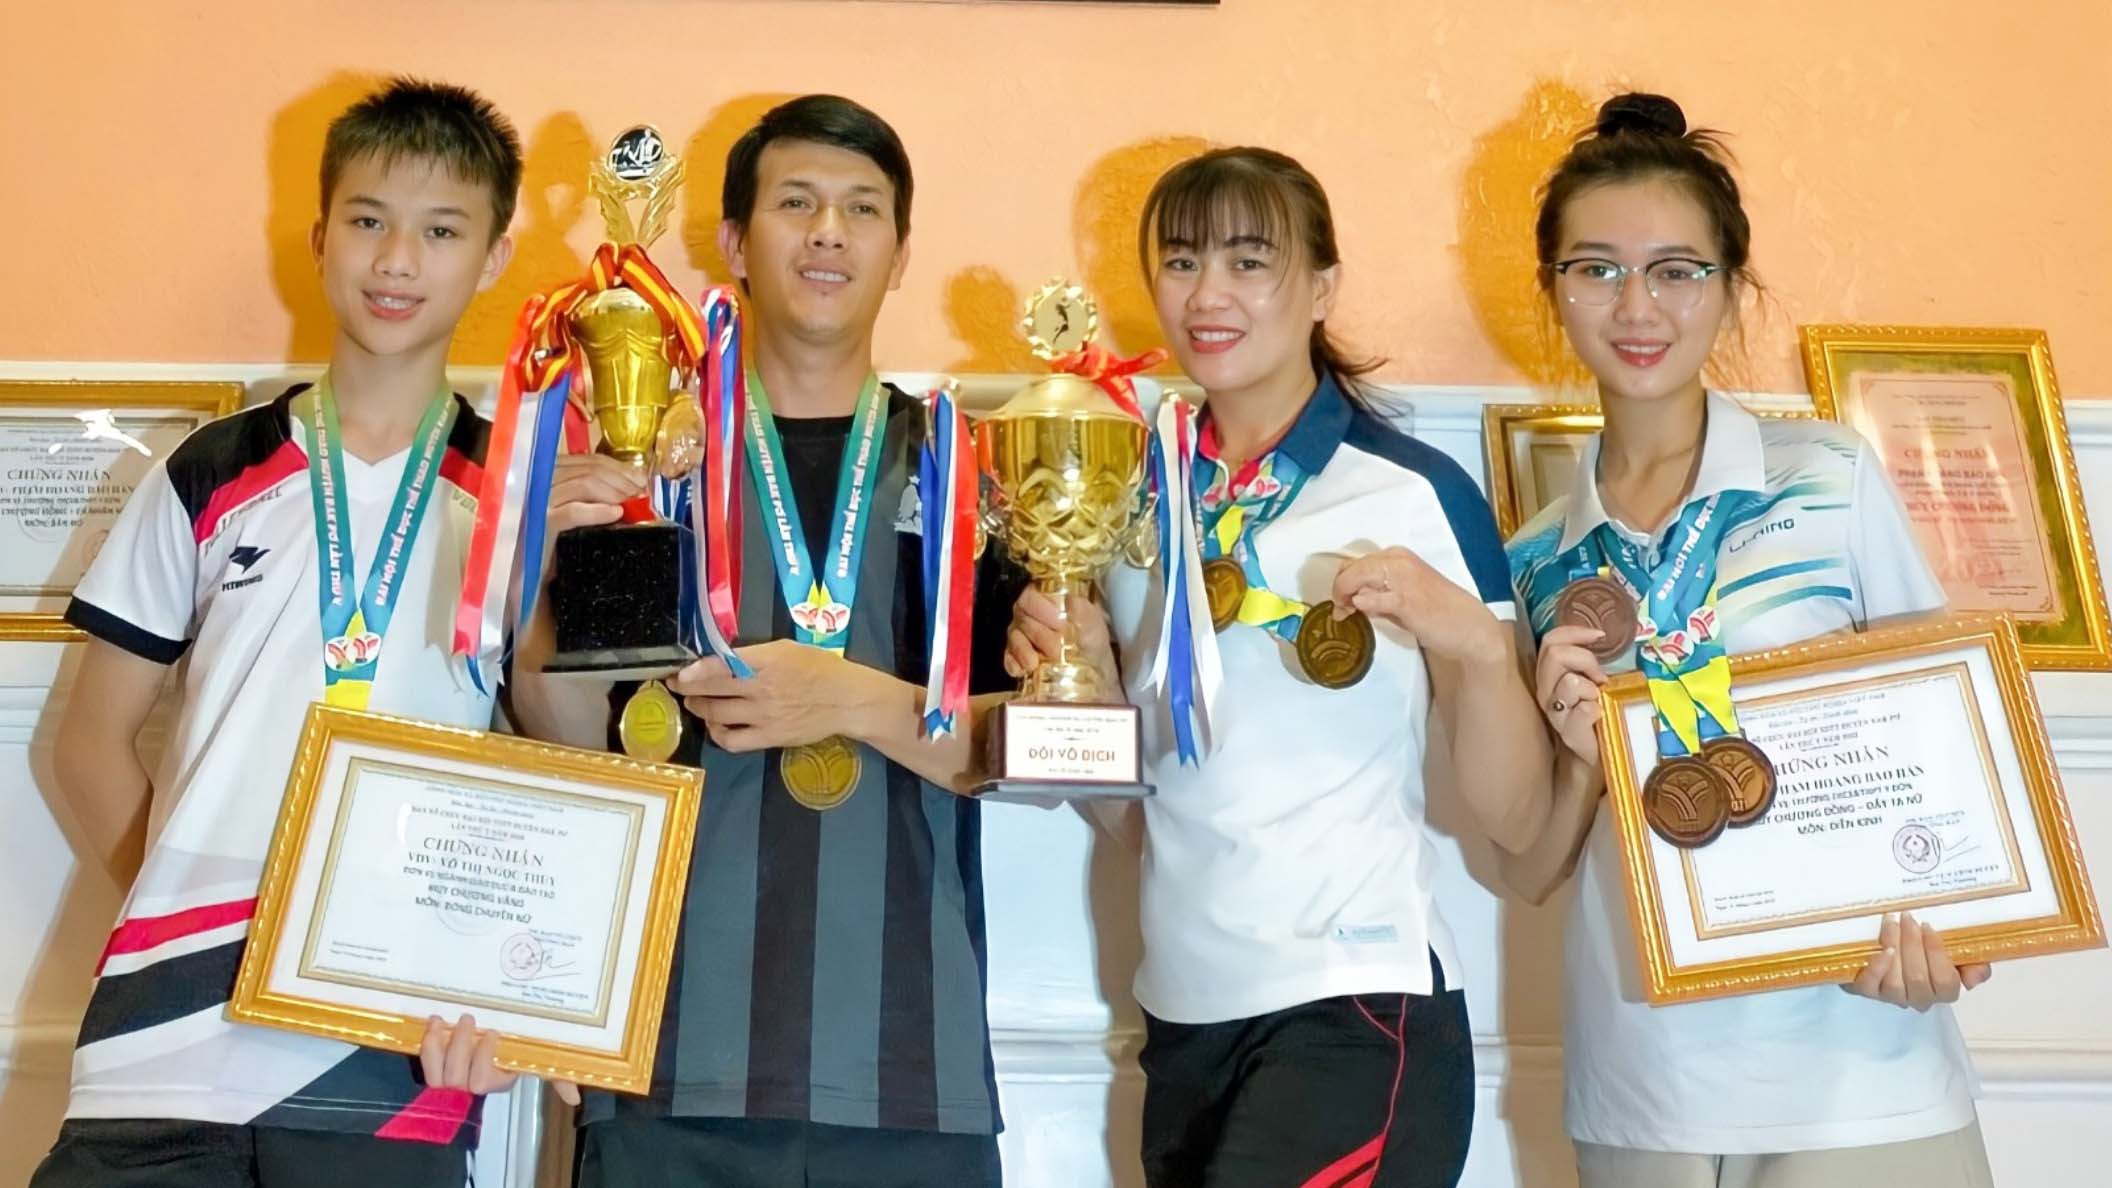 Cả gia đình chị Võ Thị Ngọc Thủy rất tích cực luyện tập và tham gia thi đấu tại các giải thể thao do địa phương tổ chức. Ảnh: Tuyết Mai